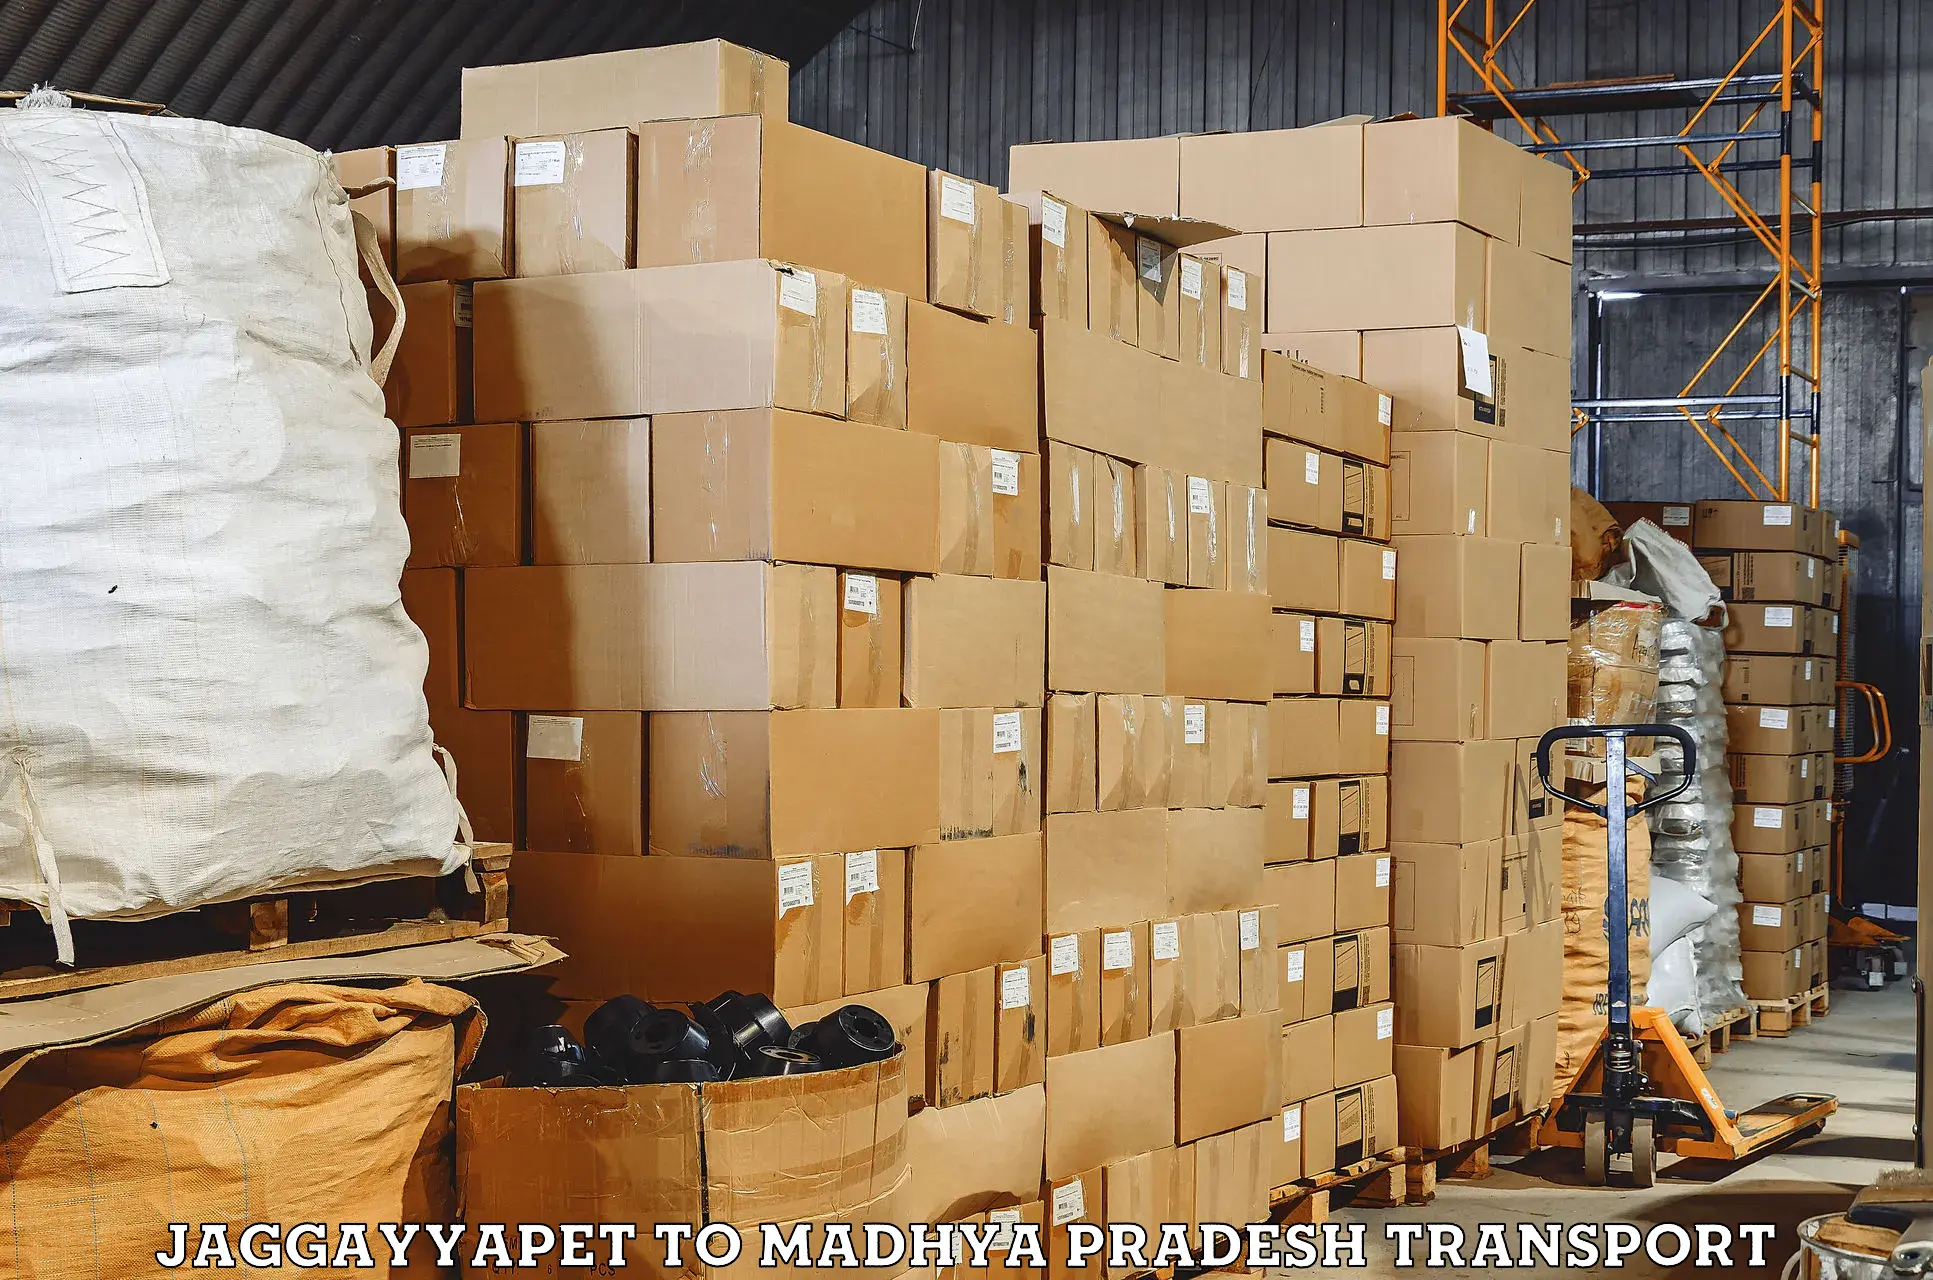 Commercial transport service Jaggayyapet to Madhya Pradesh